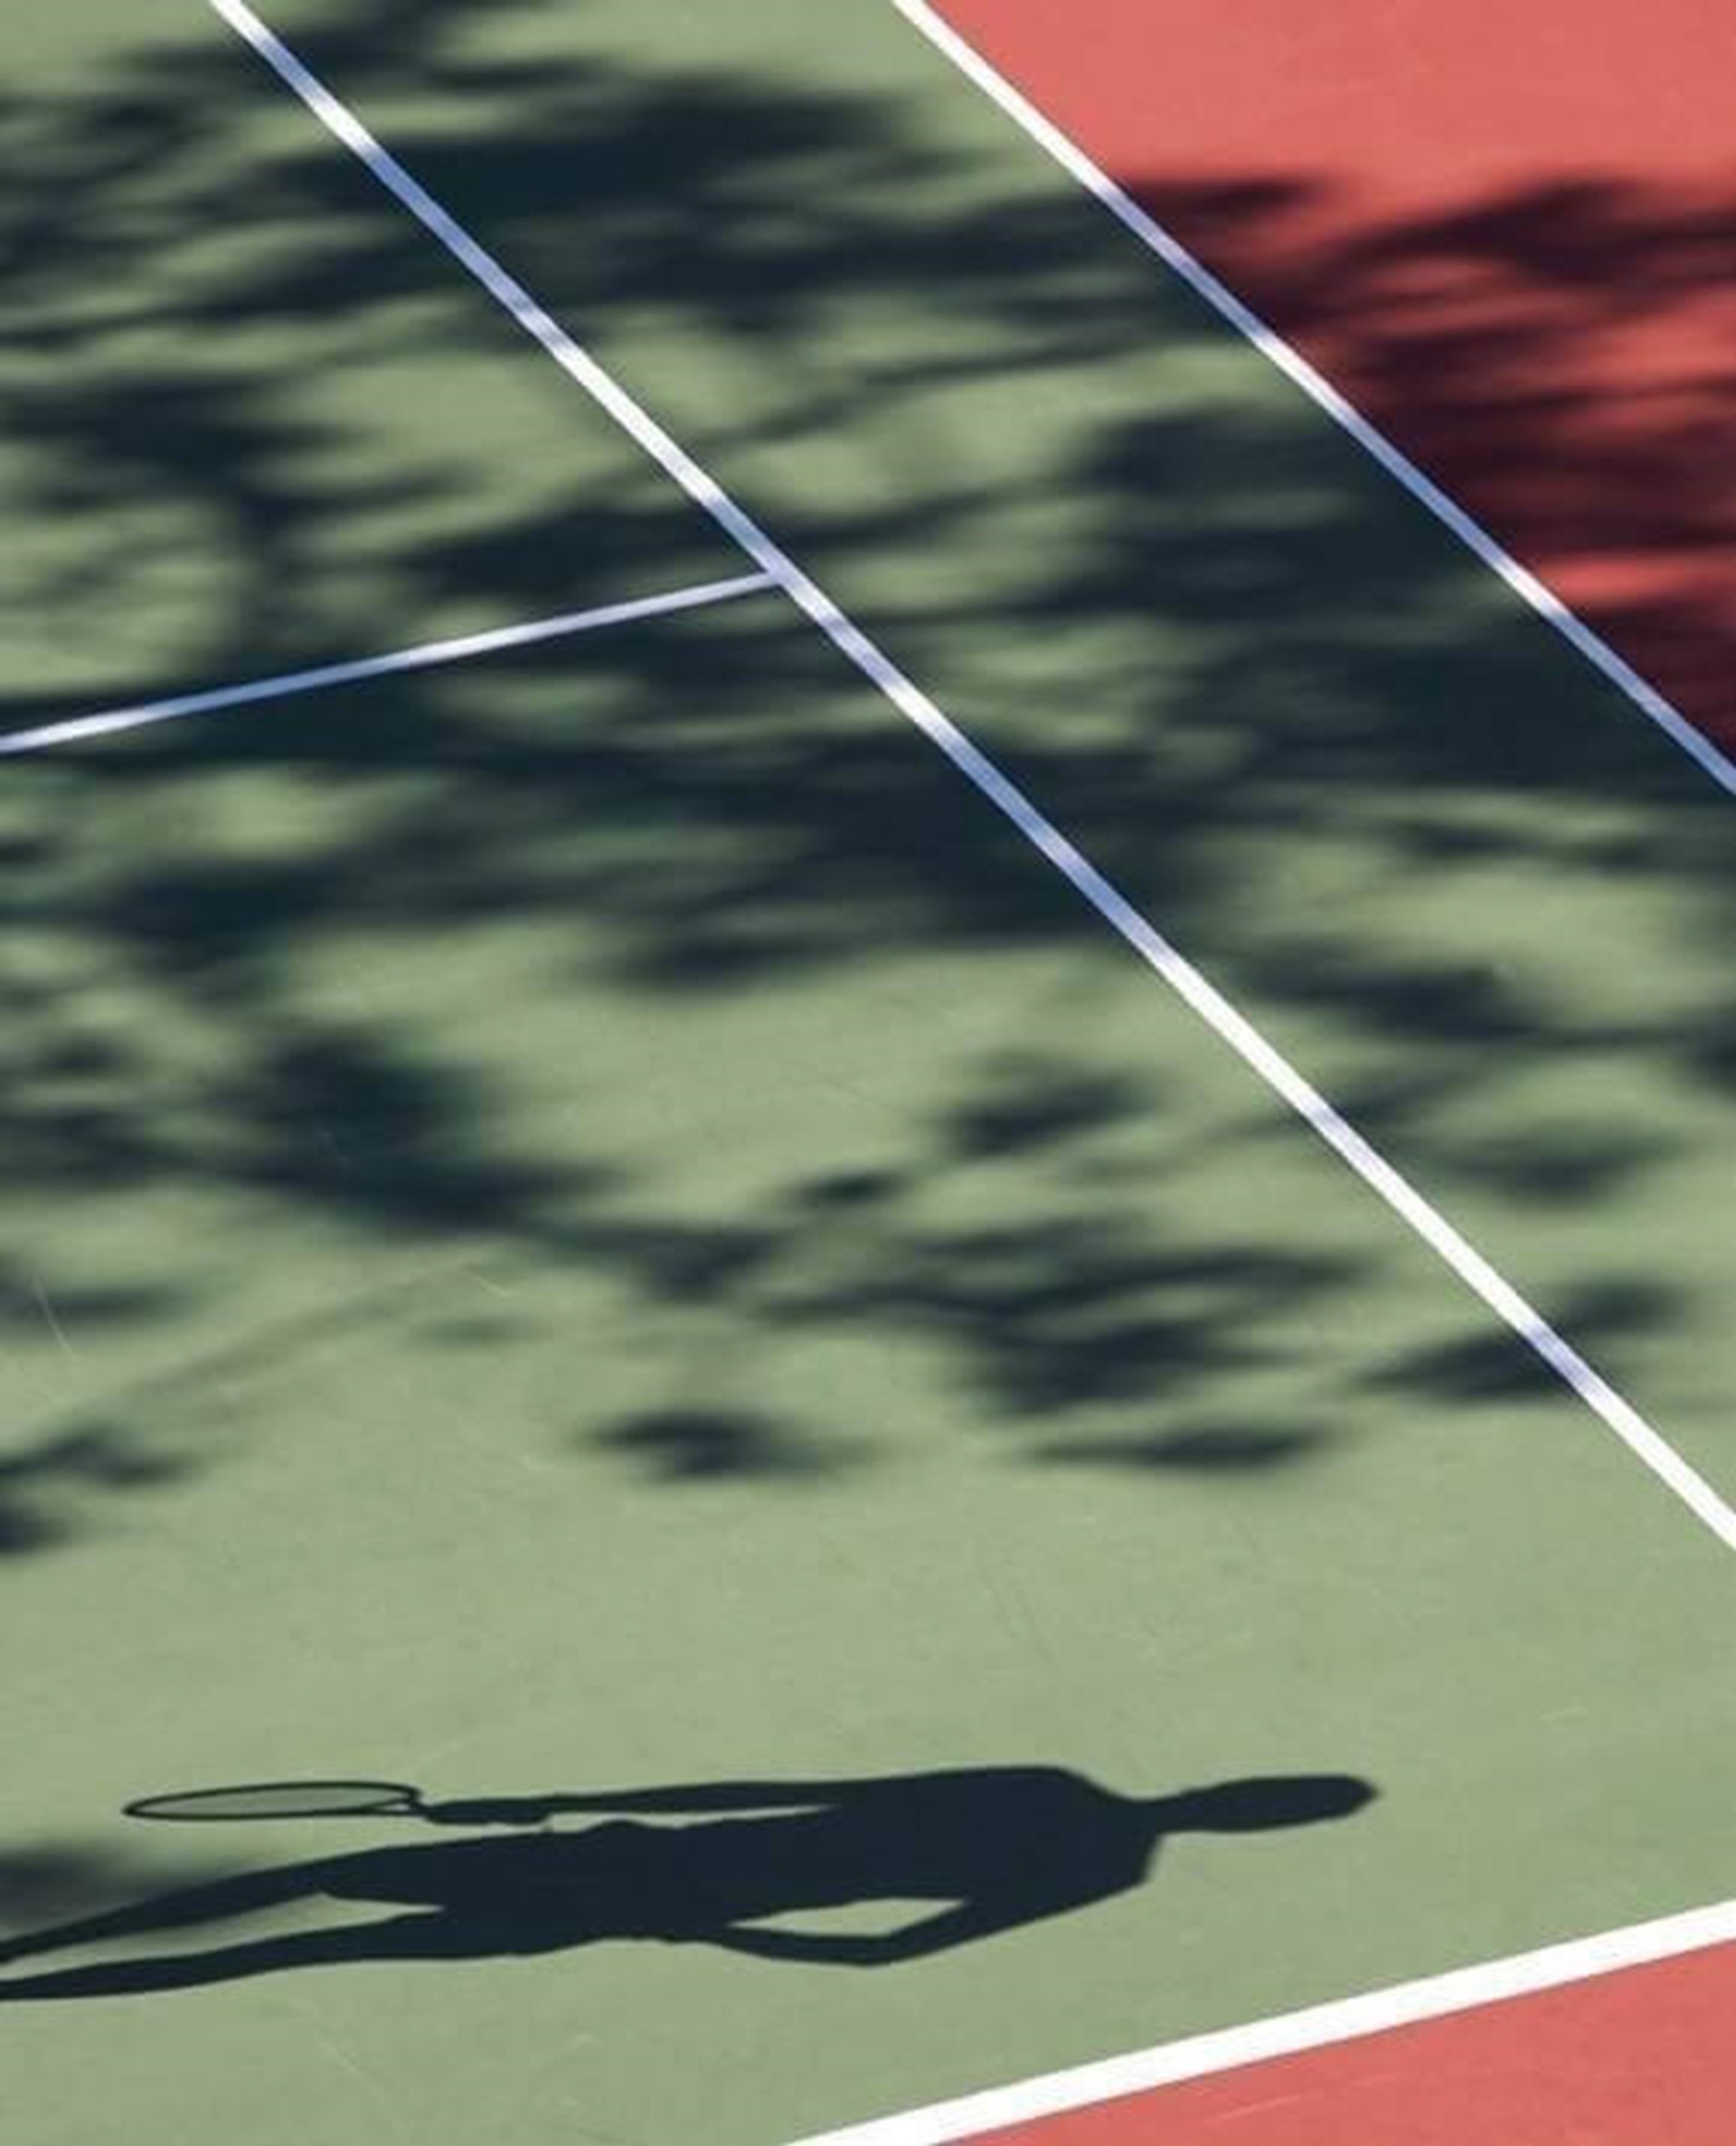 PortoBay Falésia - Tennis